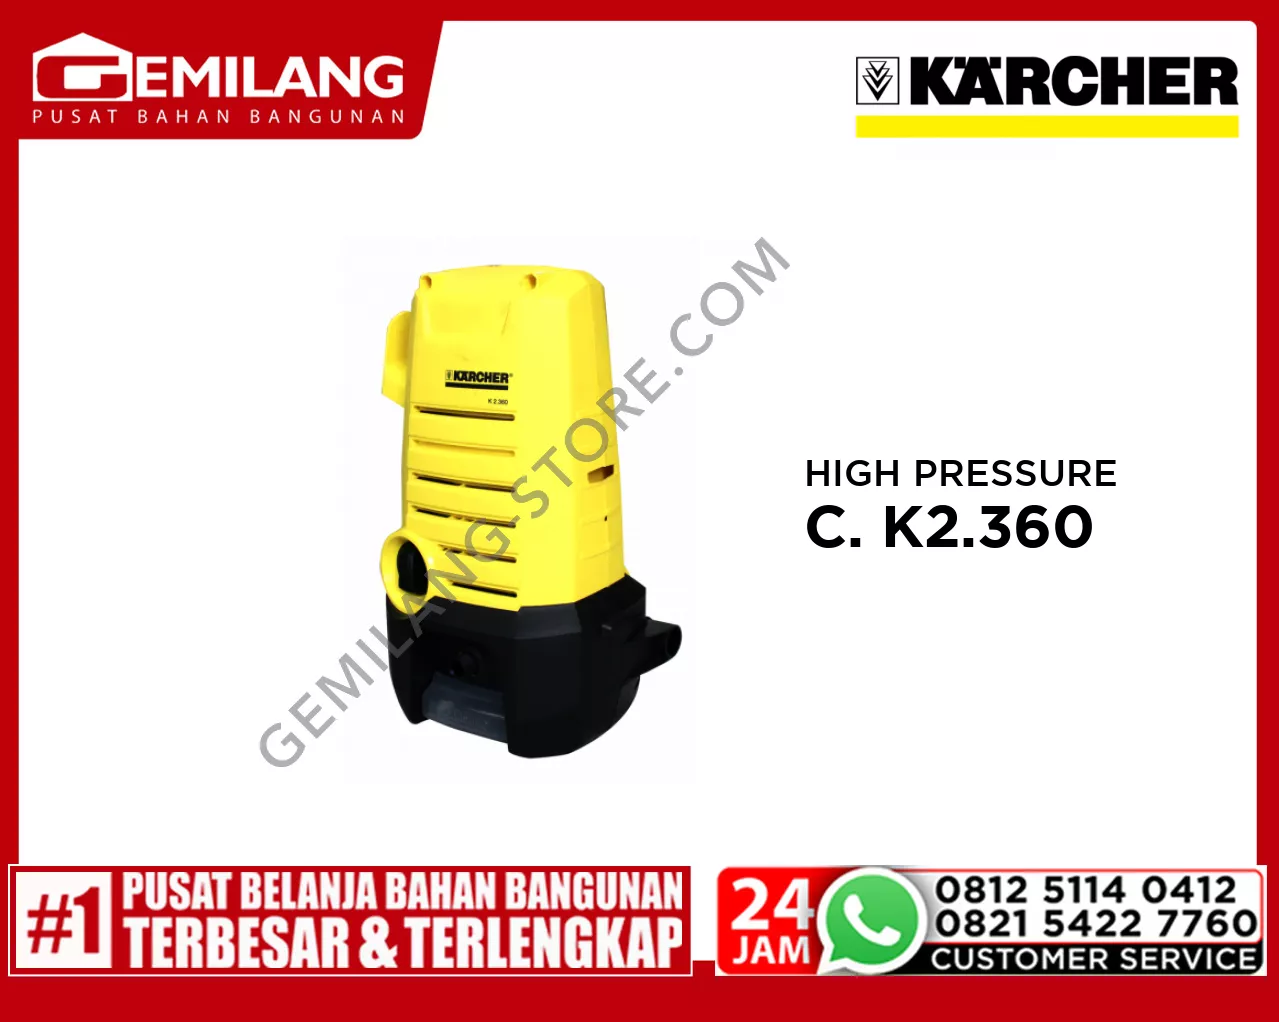 KARCHER HIGH PRESSURE CLEANER K2.360